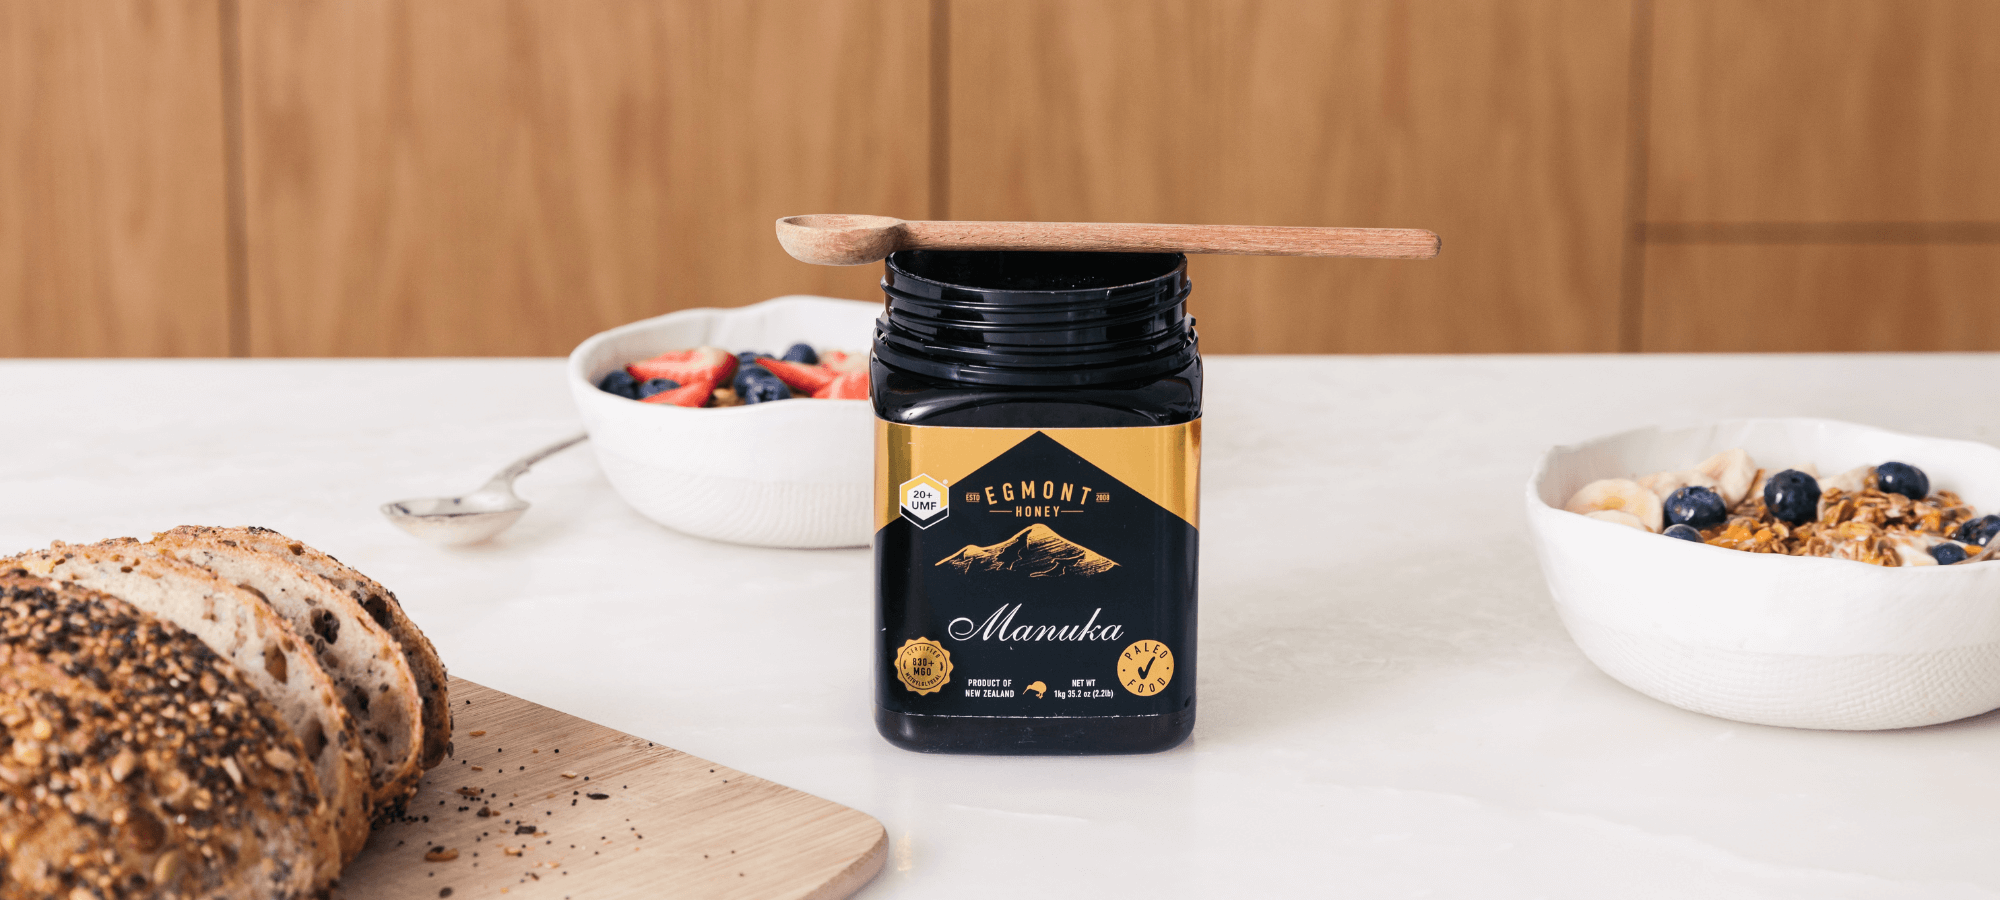 Best ways to use Manuka Honey